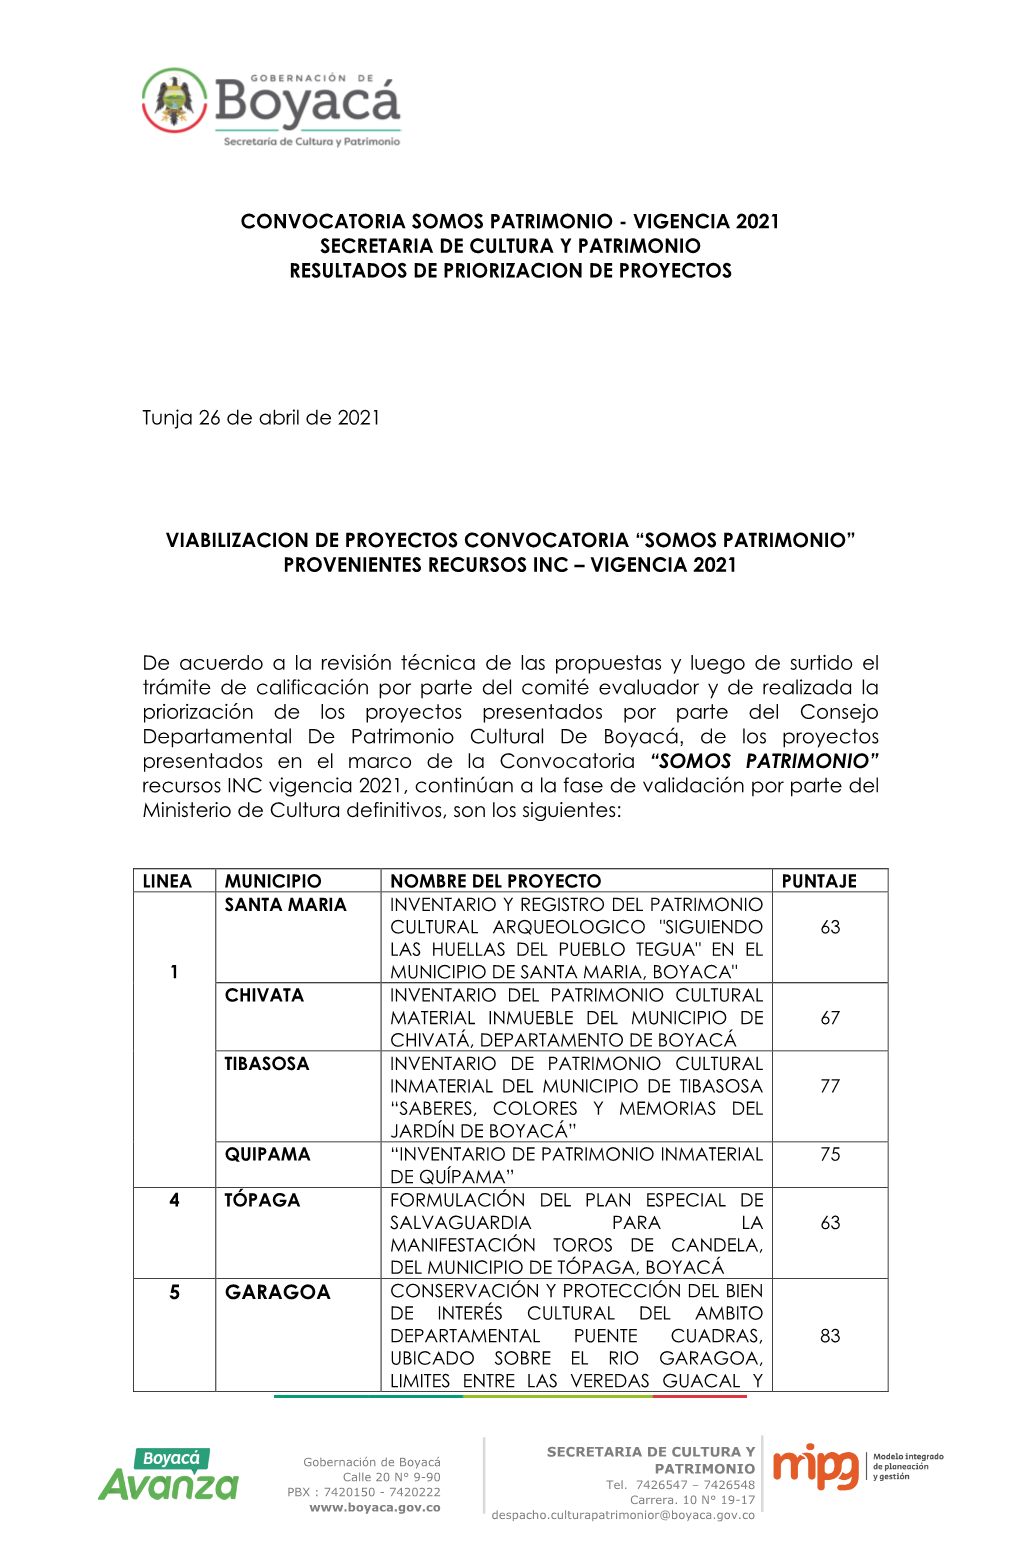 VIGENCIA 2021 SECRETARIA DE CULTURA Y PATRIMONIO RESULTADOS DE PRIORIZACION DE PROYECTOS Tunja